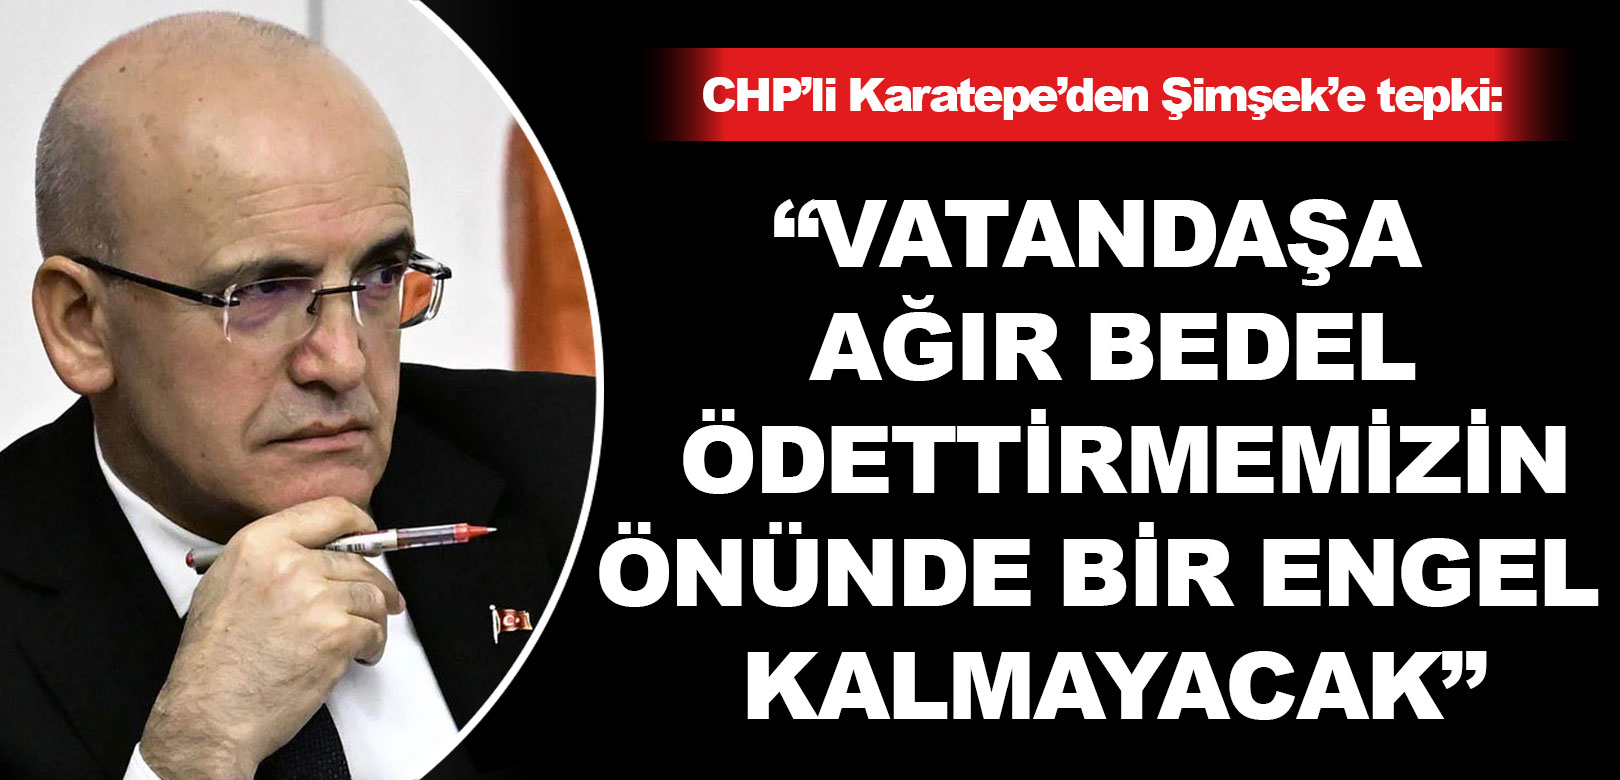 CHP'li Karatepe'den Şimşek'e: Vatandaşa ağır bedel ödettirmemizin önünde bir engel kalmayacak